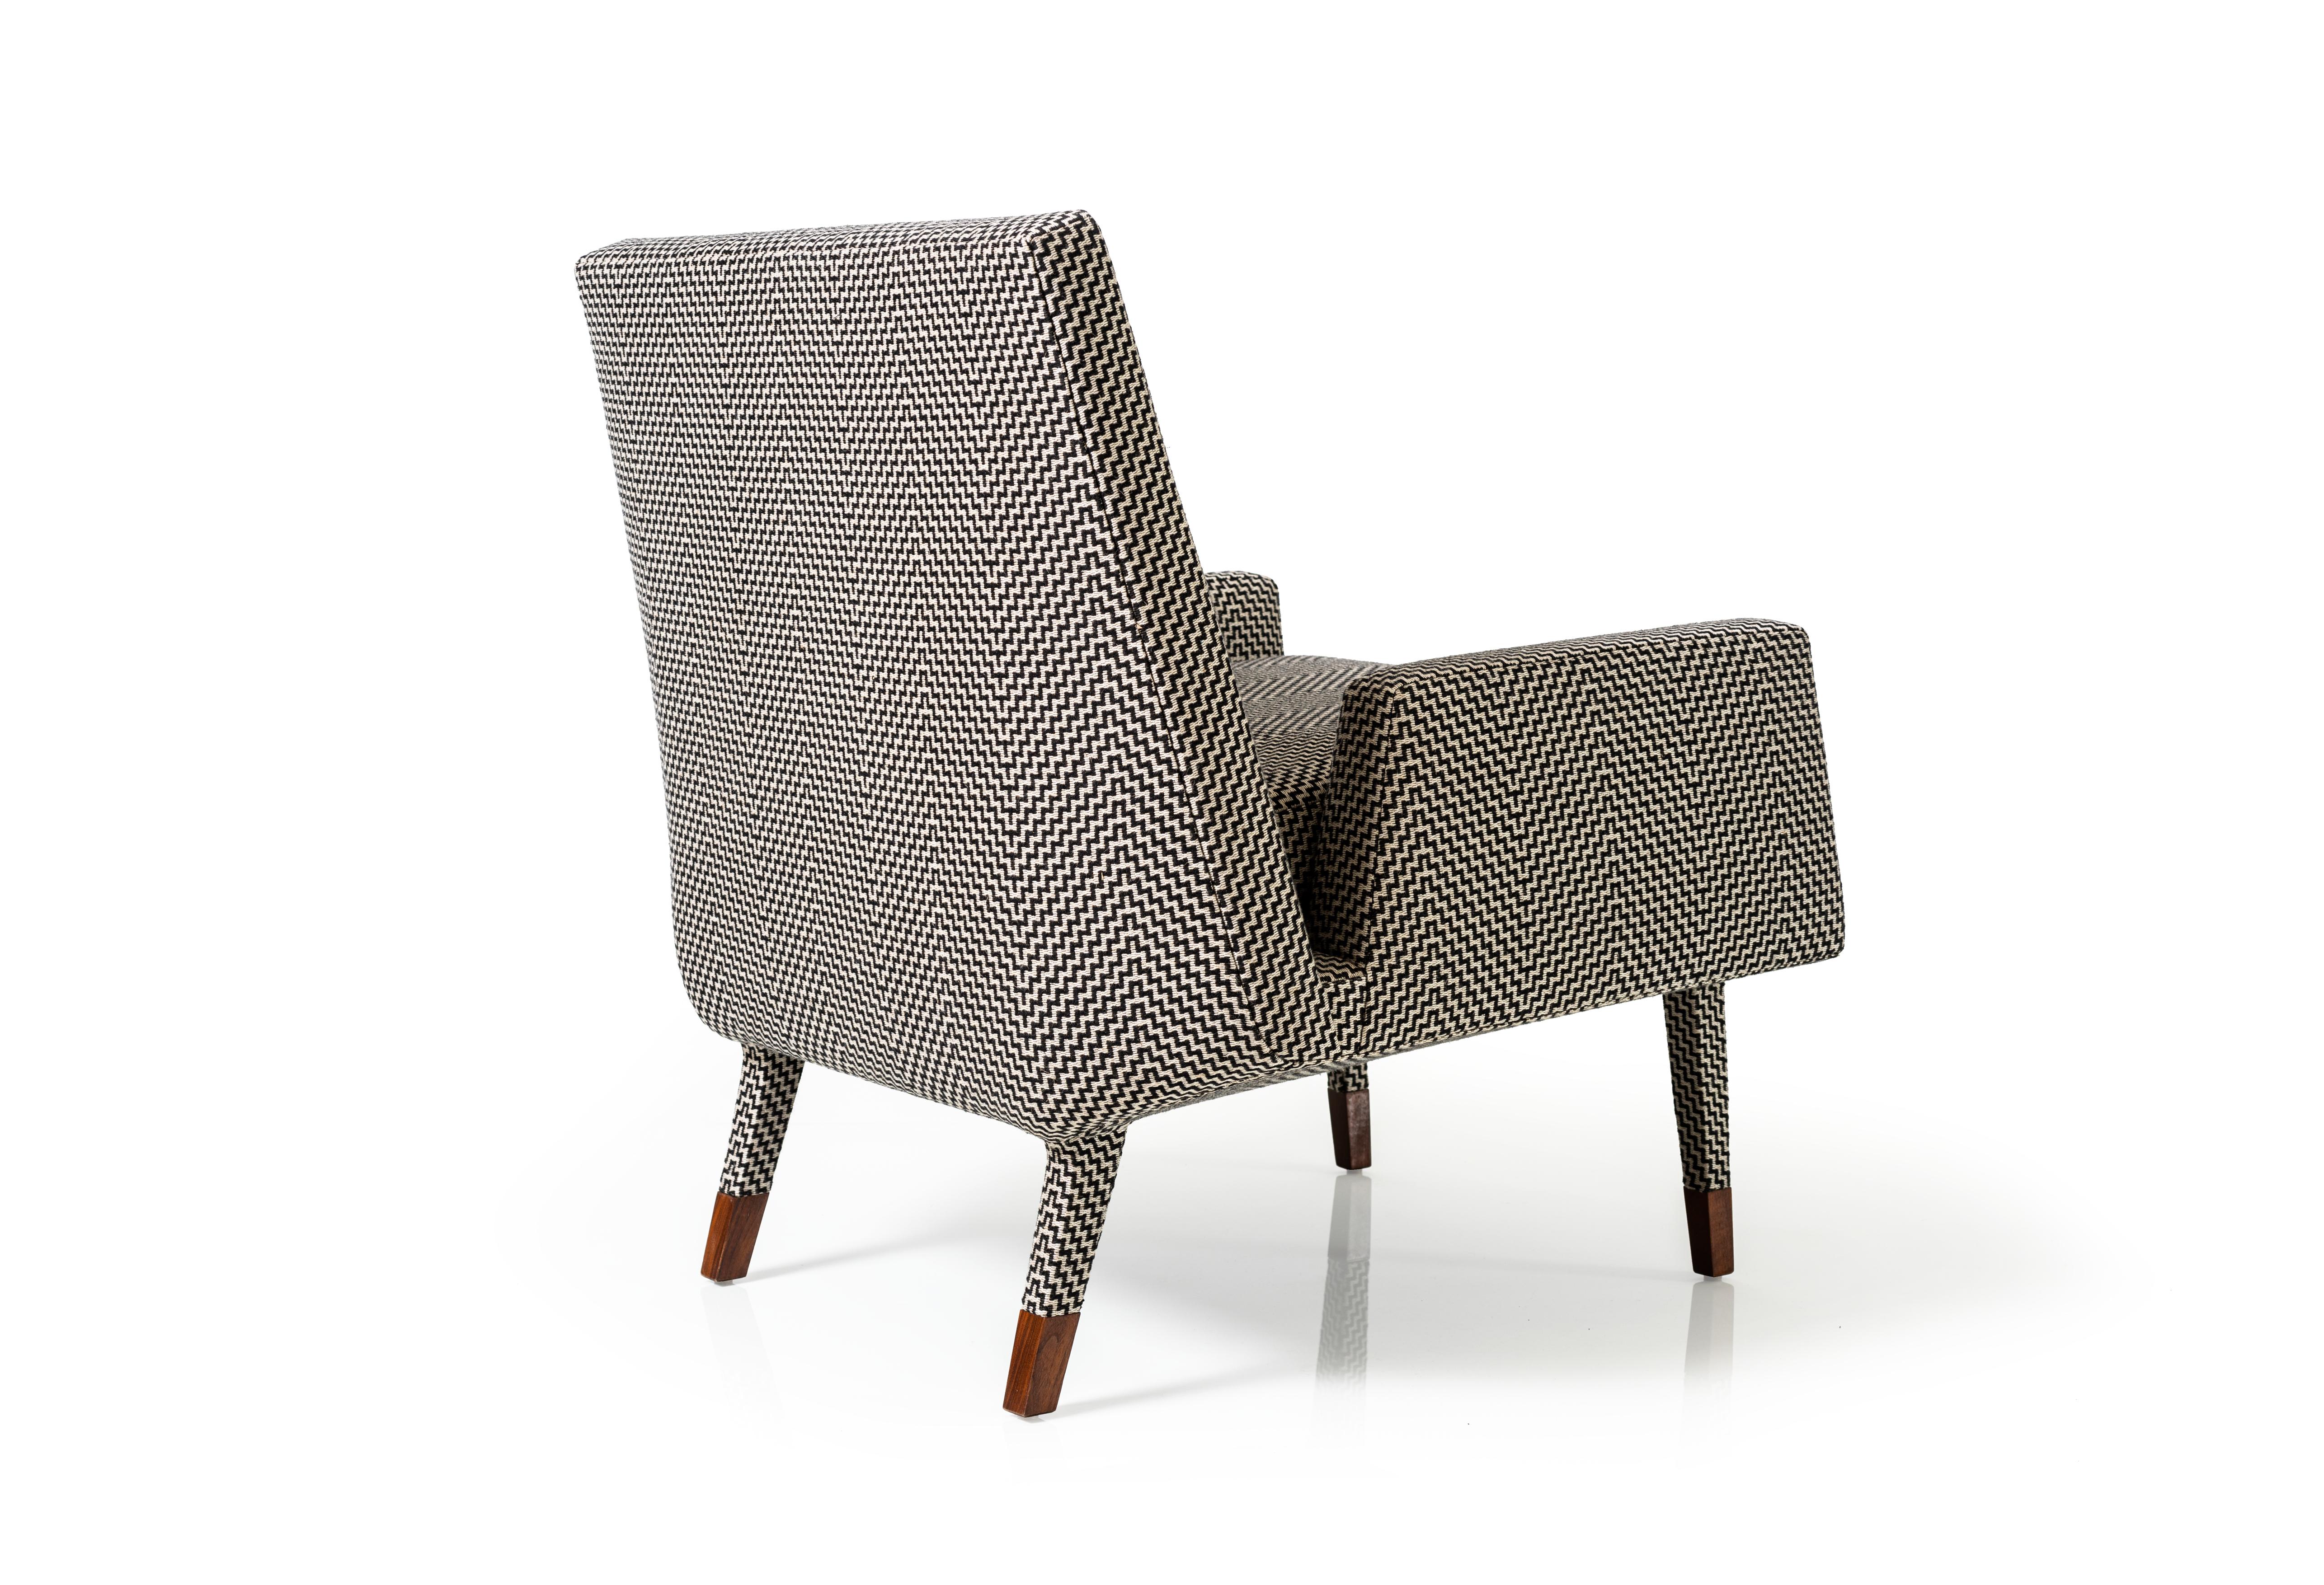 Der Angott Club Chair hat eine weiche und fließende Ausstrahlung, die durch die vollständig gepolsterte Form noch verstärkt wird. Der Stoff bedeckt jeden Teil des Möbelstücks, einschließlich des abgeschrägten Sockels und eines Teils der Beine, bevor